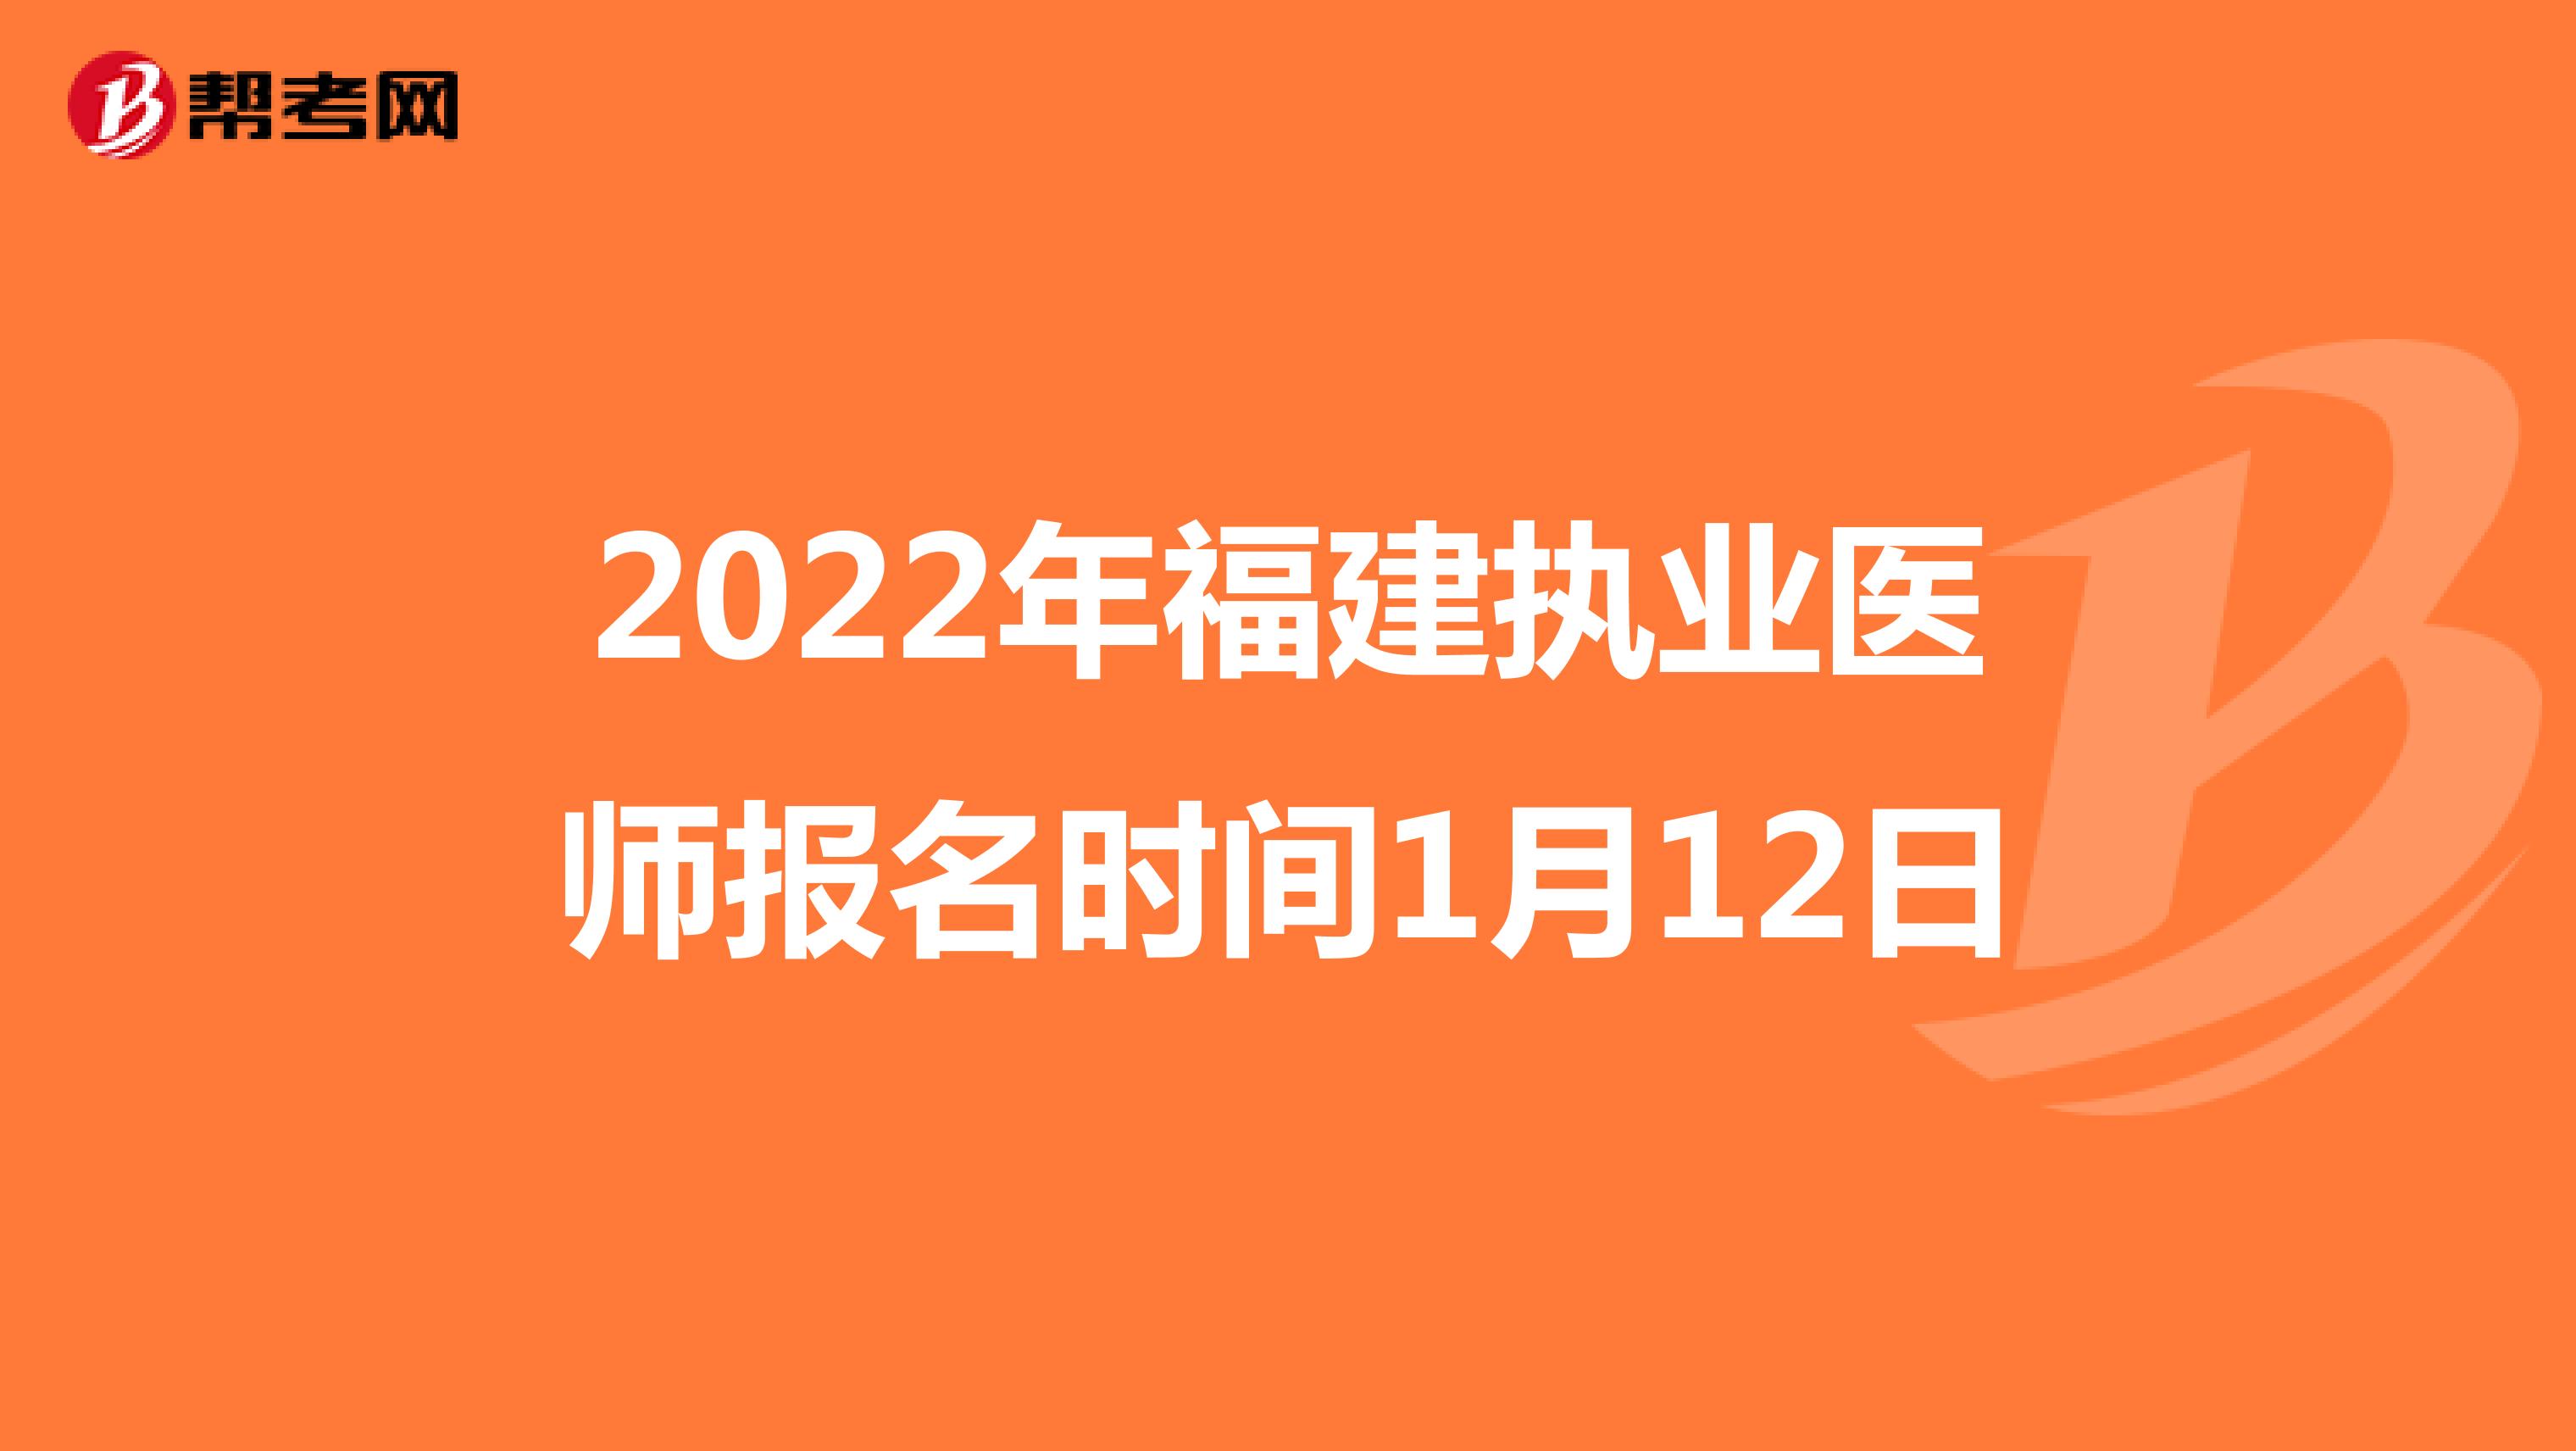 2022年福建执业医师报名时间1月12日